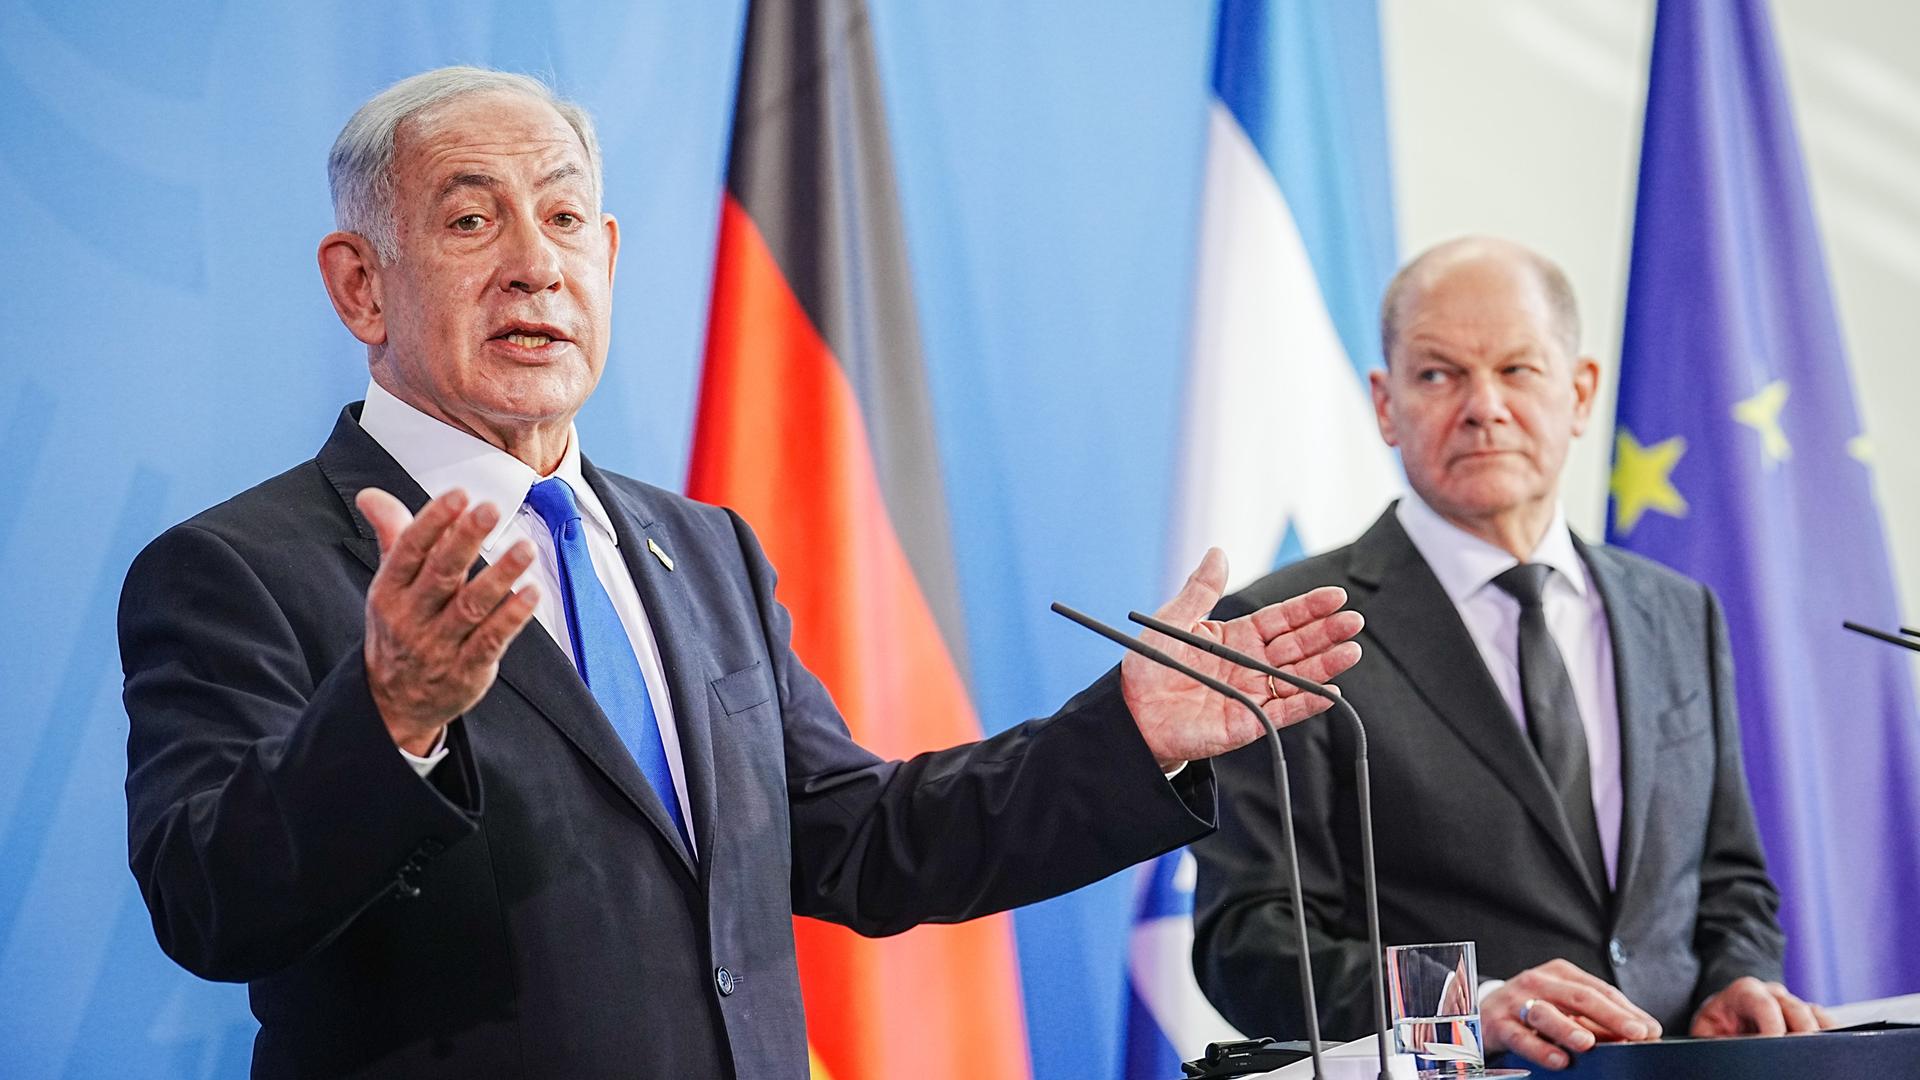 Bundeskanzler Olaf Scholz und Benjamin Netanjahu, Ministerpräsident von Israel, geben im Bundeskanzleramt eine Pressekonferenz.